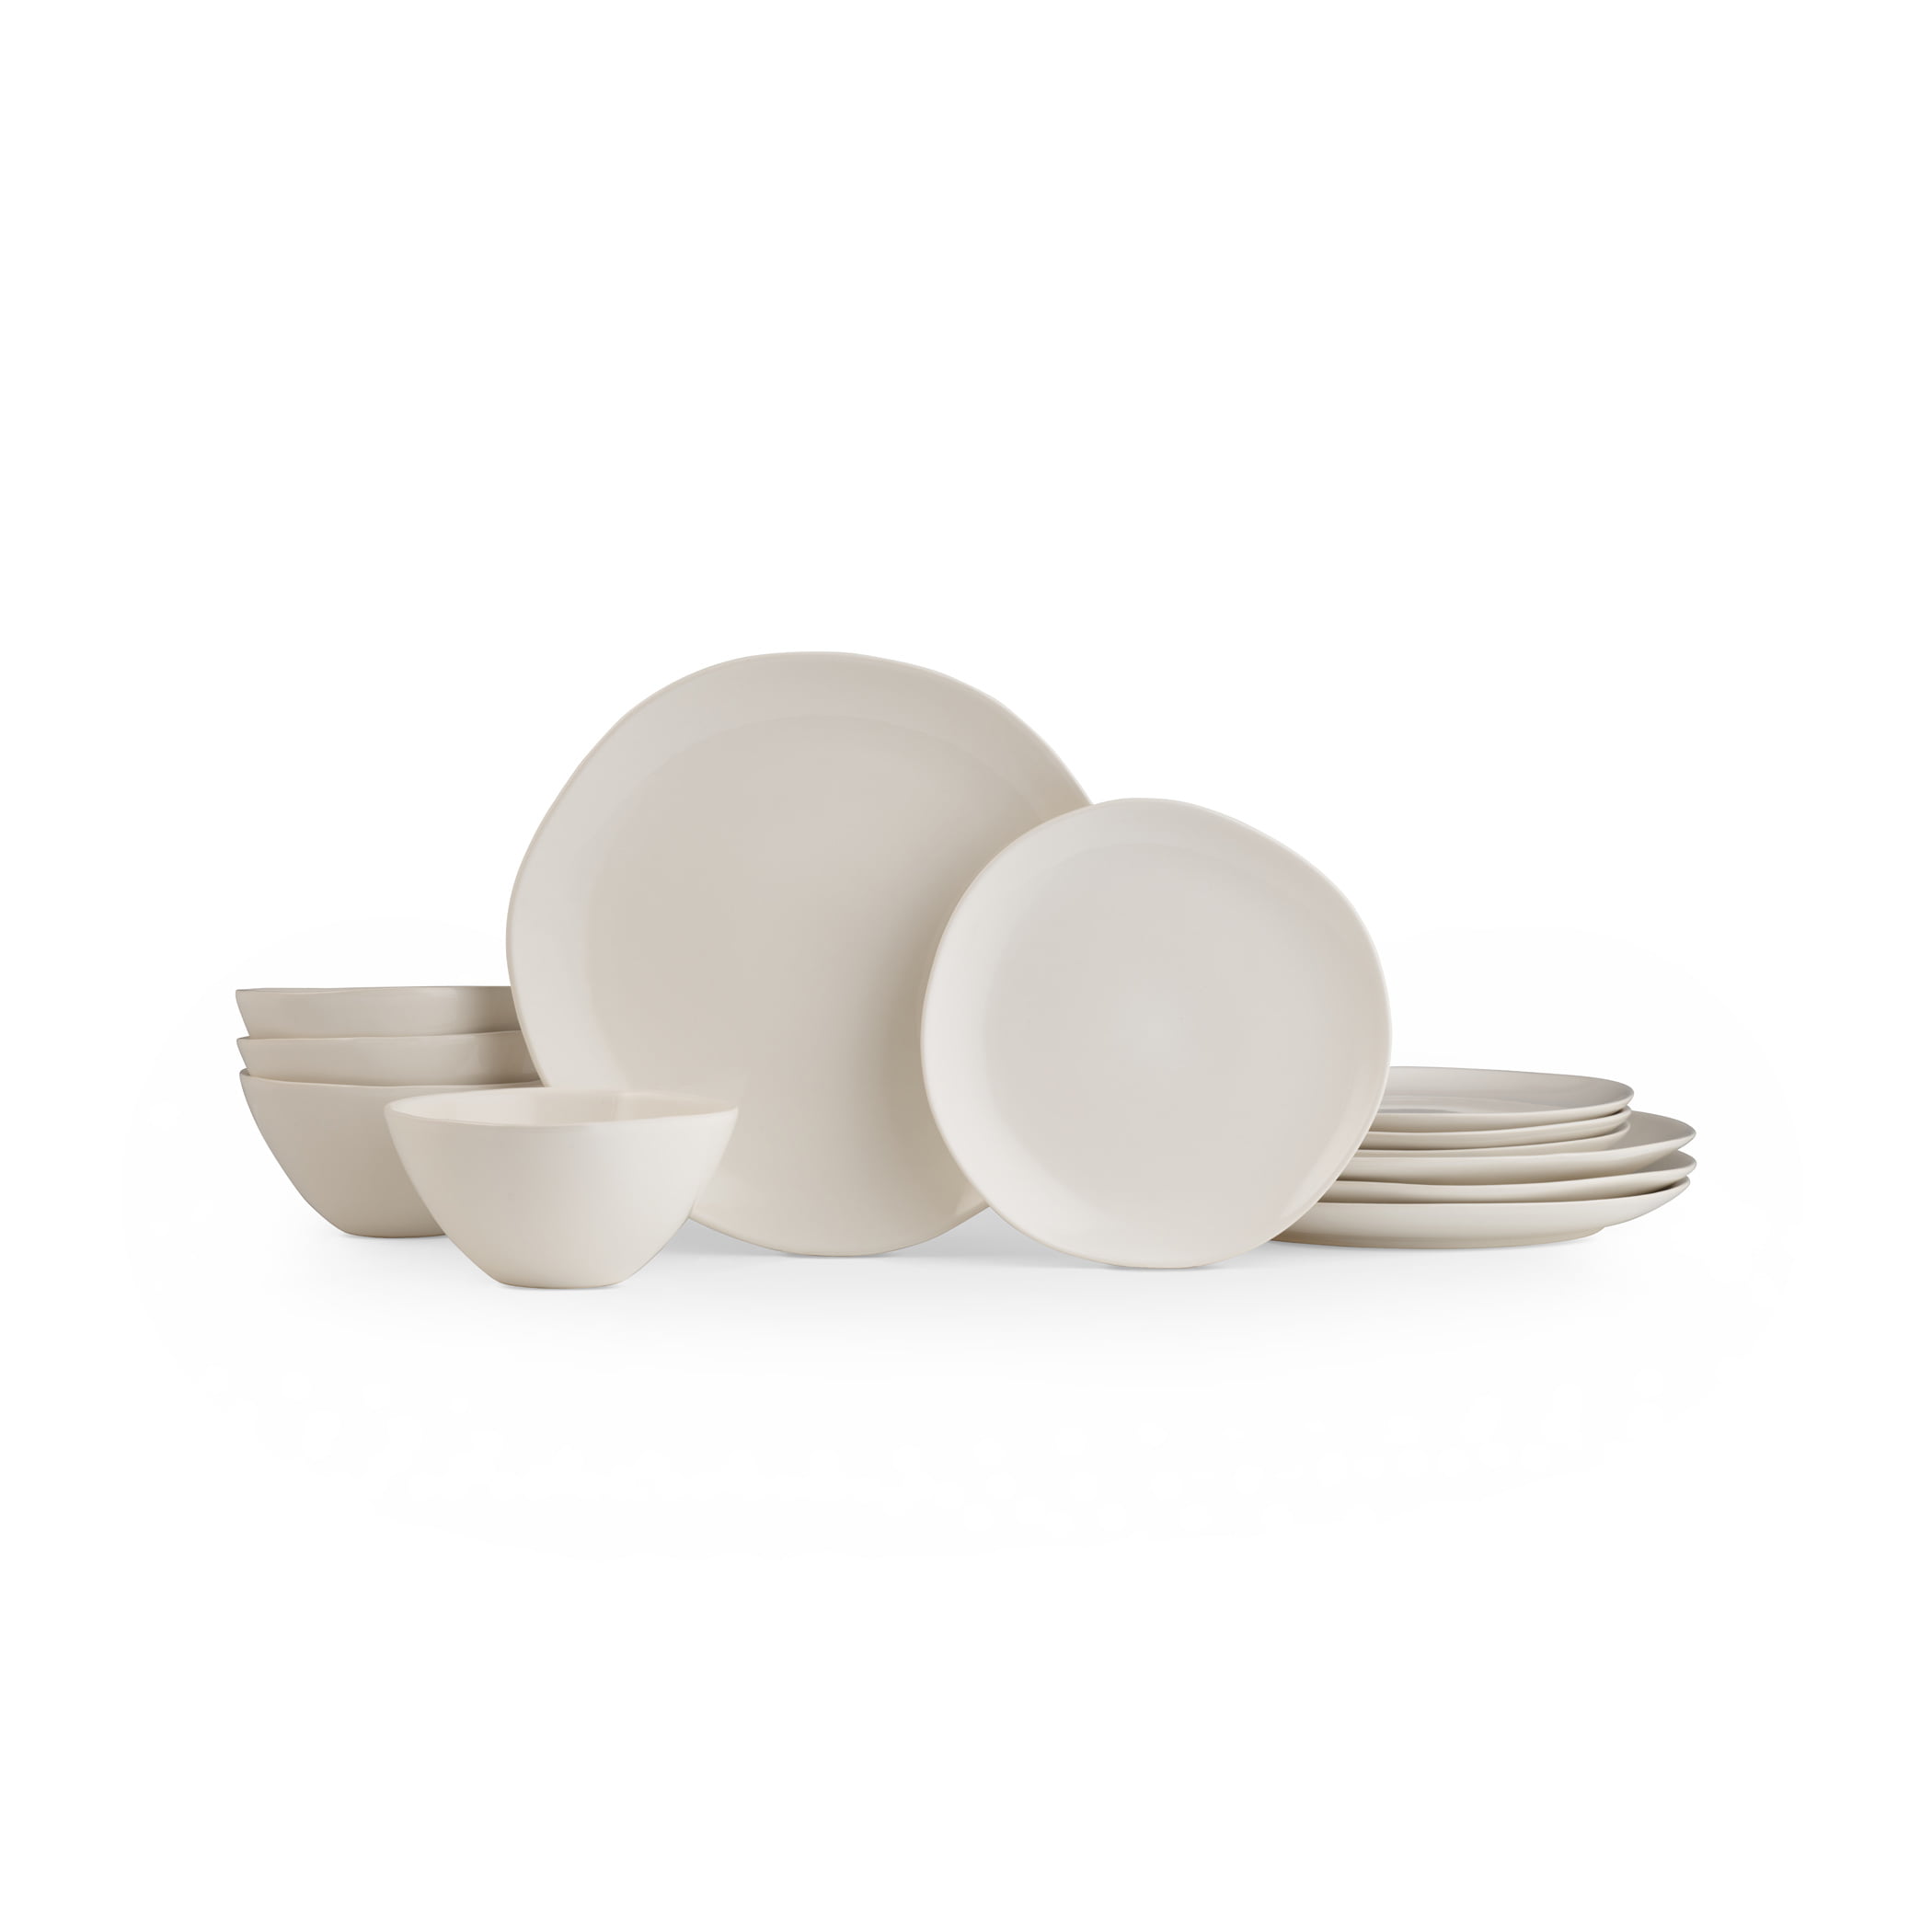 Details about   Sophie Conran Portmeirion Mistletoe Design 12 Piece Porcelain Plates & Bowl Set 